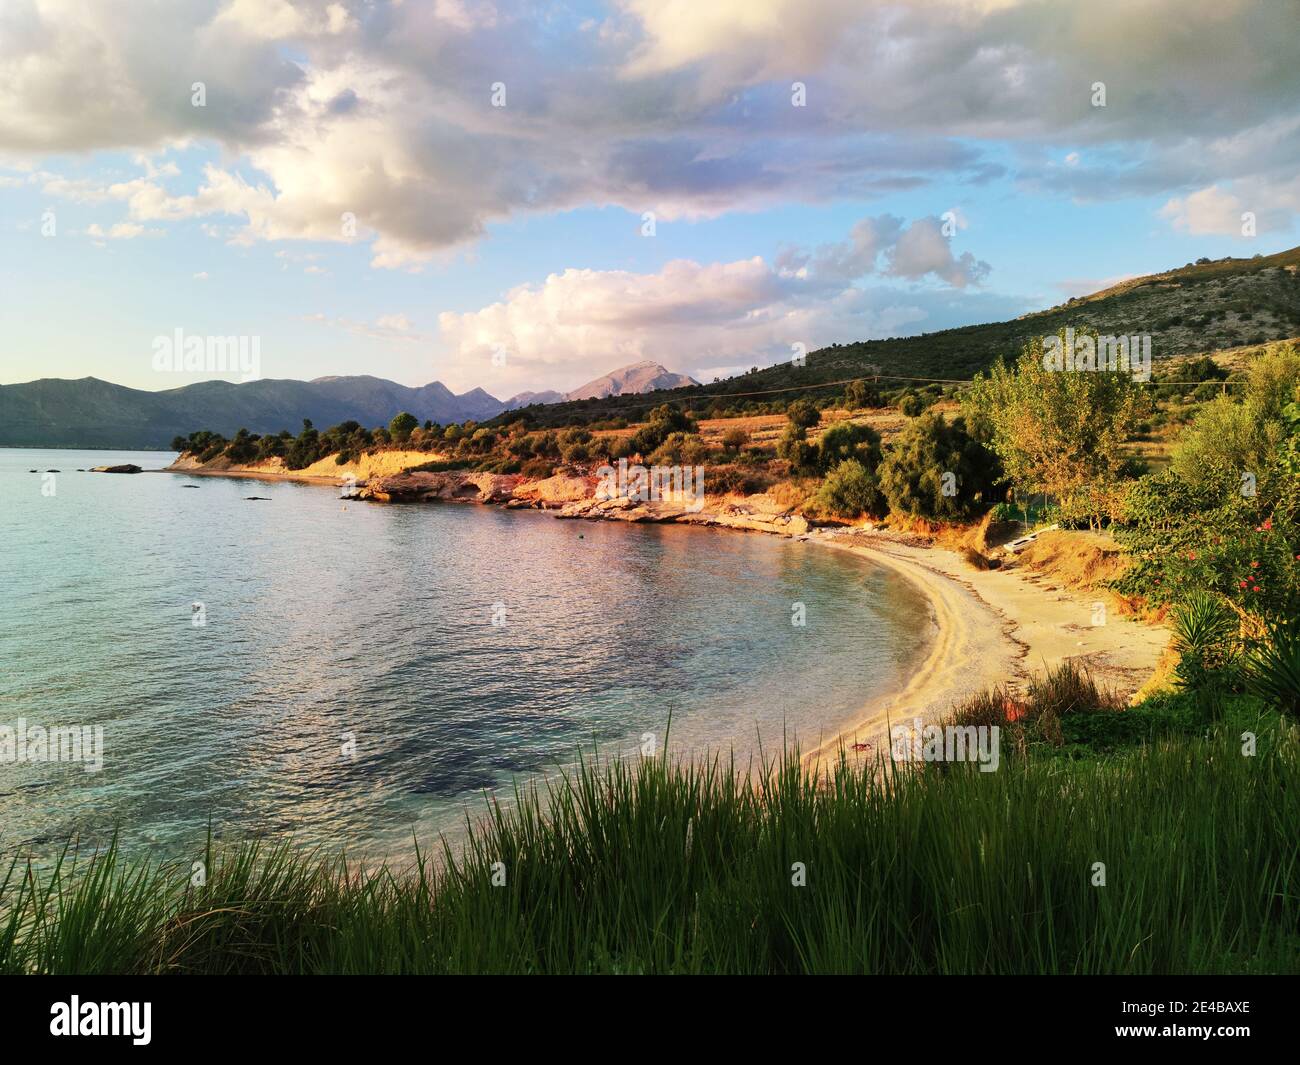 Bucht am Festland im Sund der Insel Kalamos, Ionisches Meer, Mittelgriechenland Foto Stock